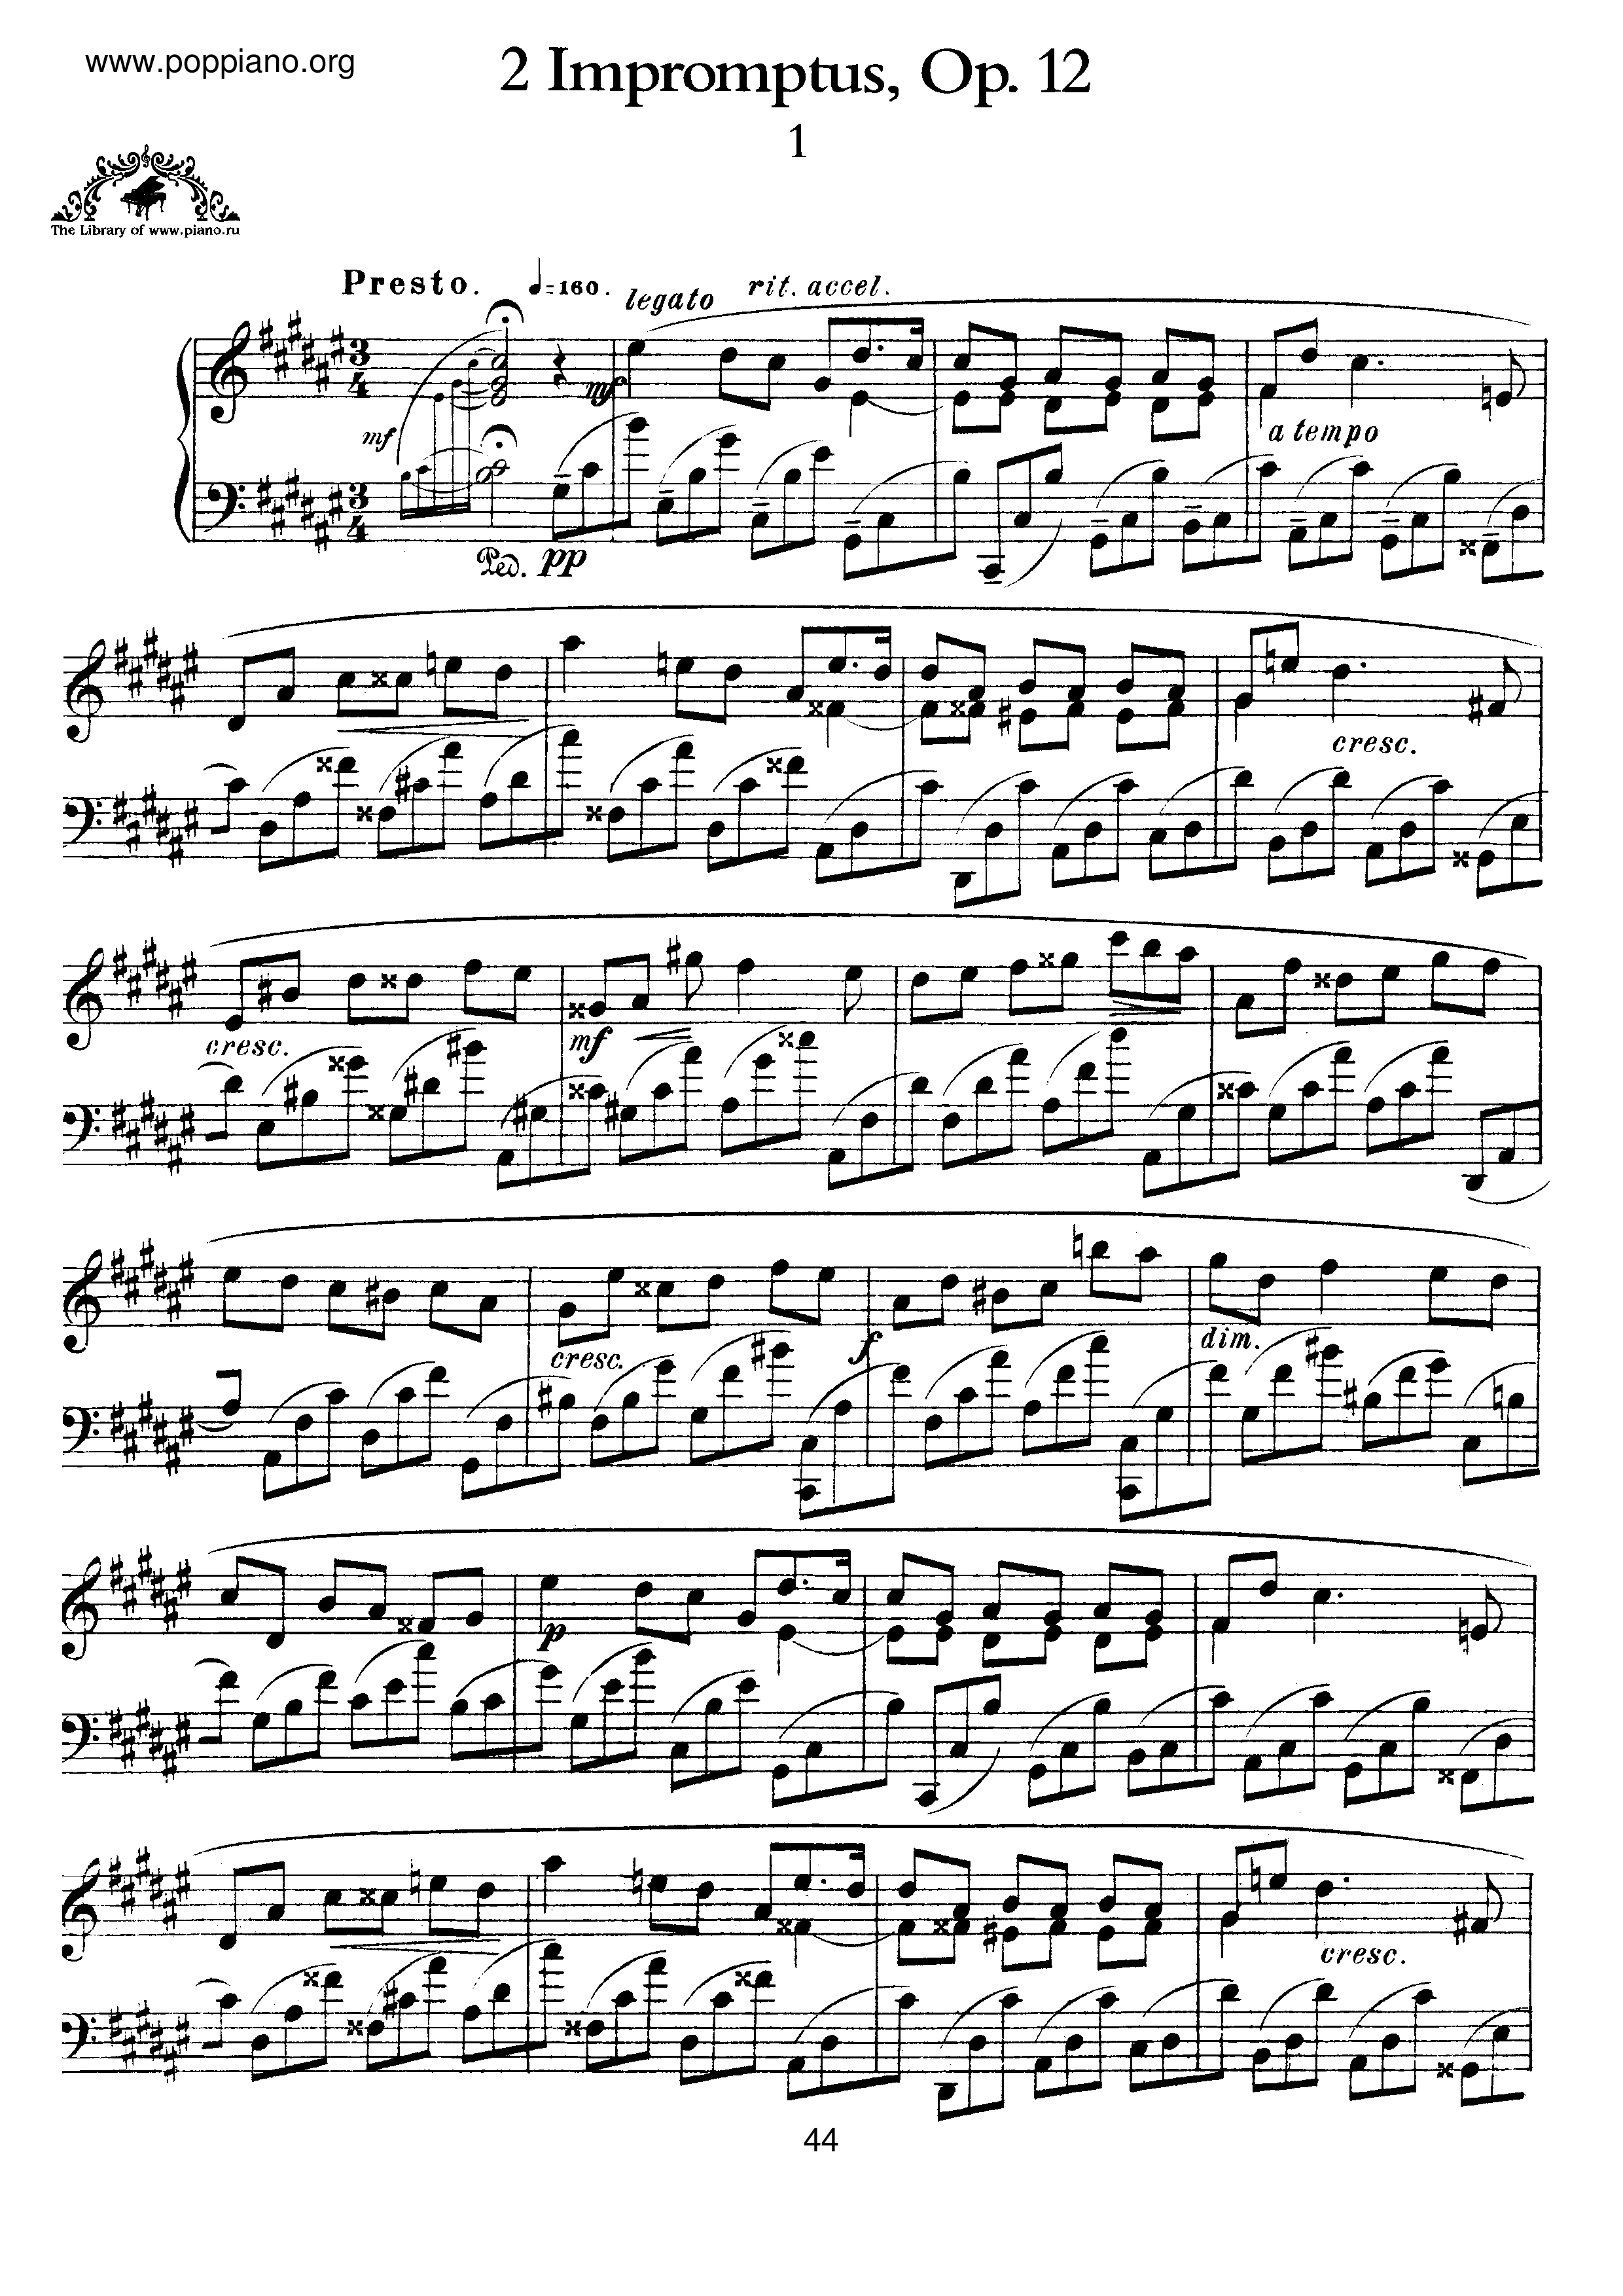 2 Impromptus, Op.12ピアノ譜